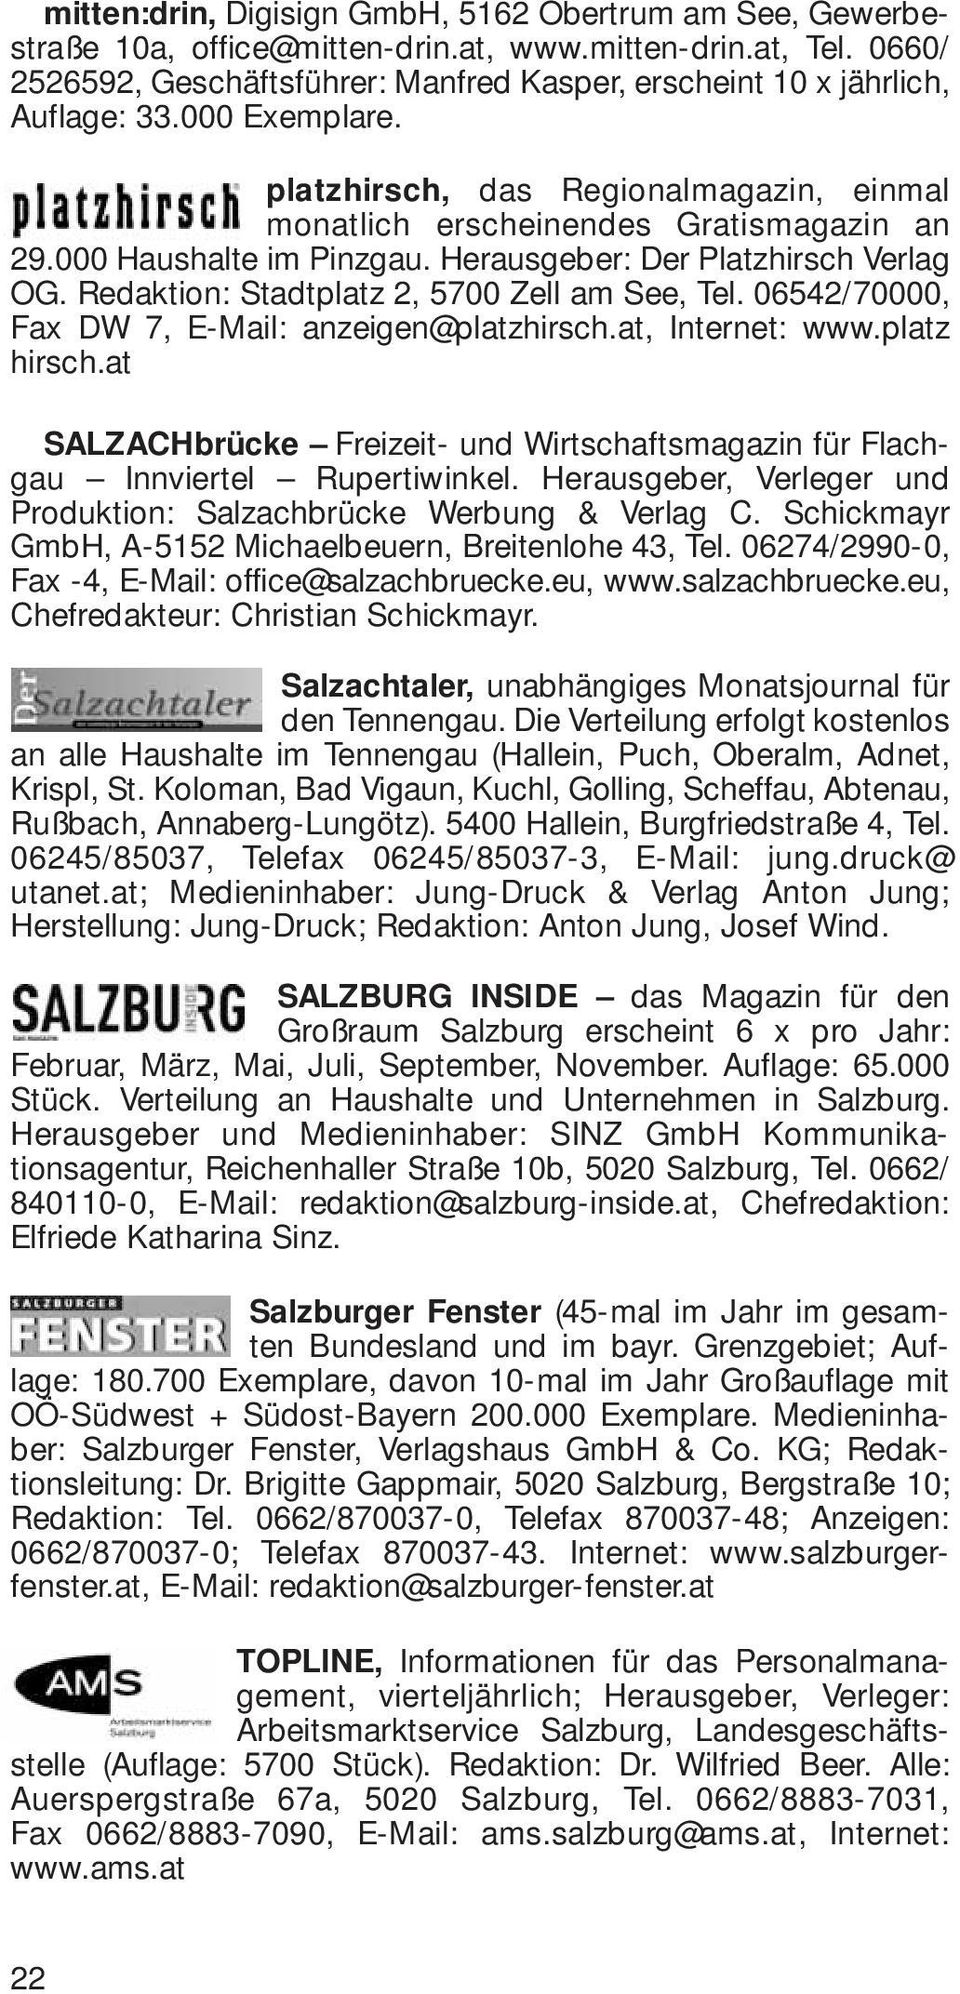 000 Haushalte im Pinzgau. Herausgeber: Der Platzhirsch Verlag OG. Redaktion: Stadtplatz 2, 5700 Zell am See, Tel. 06542/70000, Fax DW 7, E-Mail: anzeigen@platzhirsch.at, Internet: www.platz hirsch.